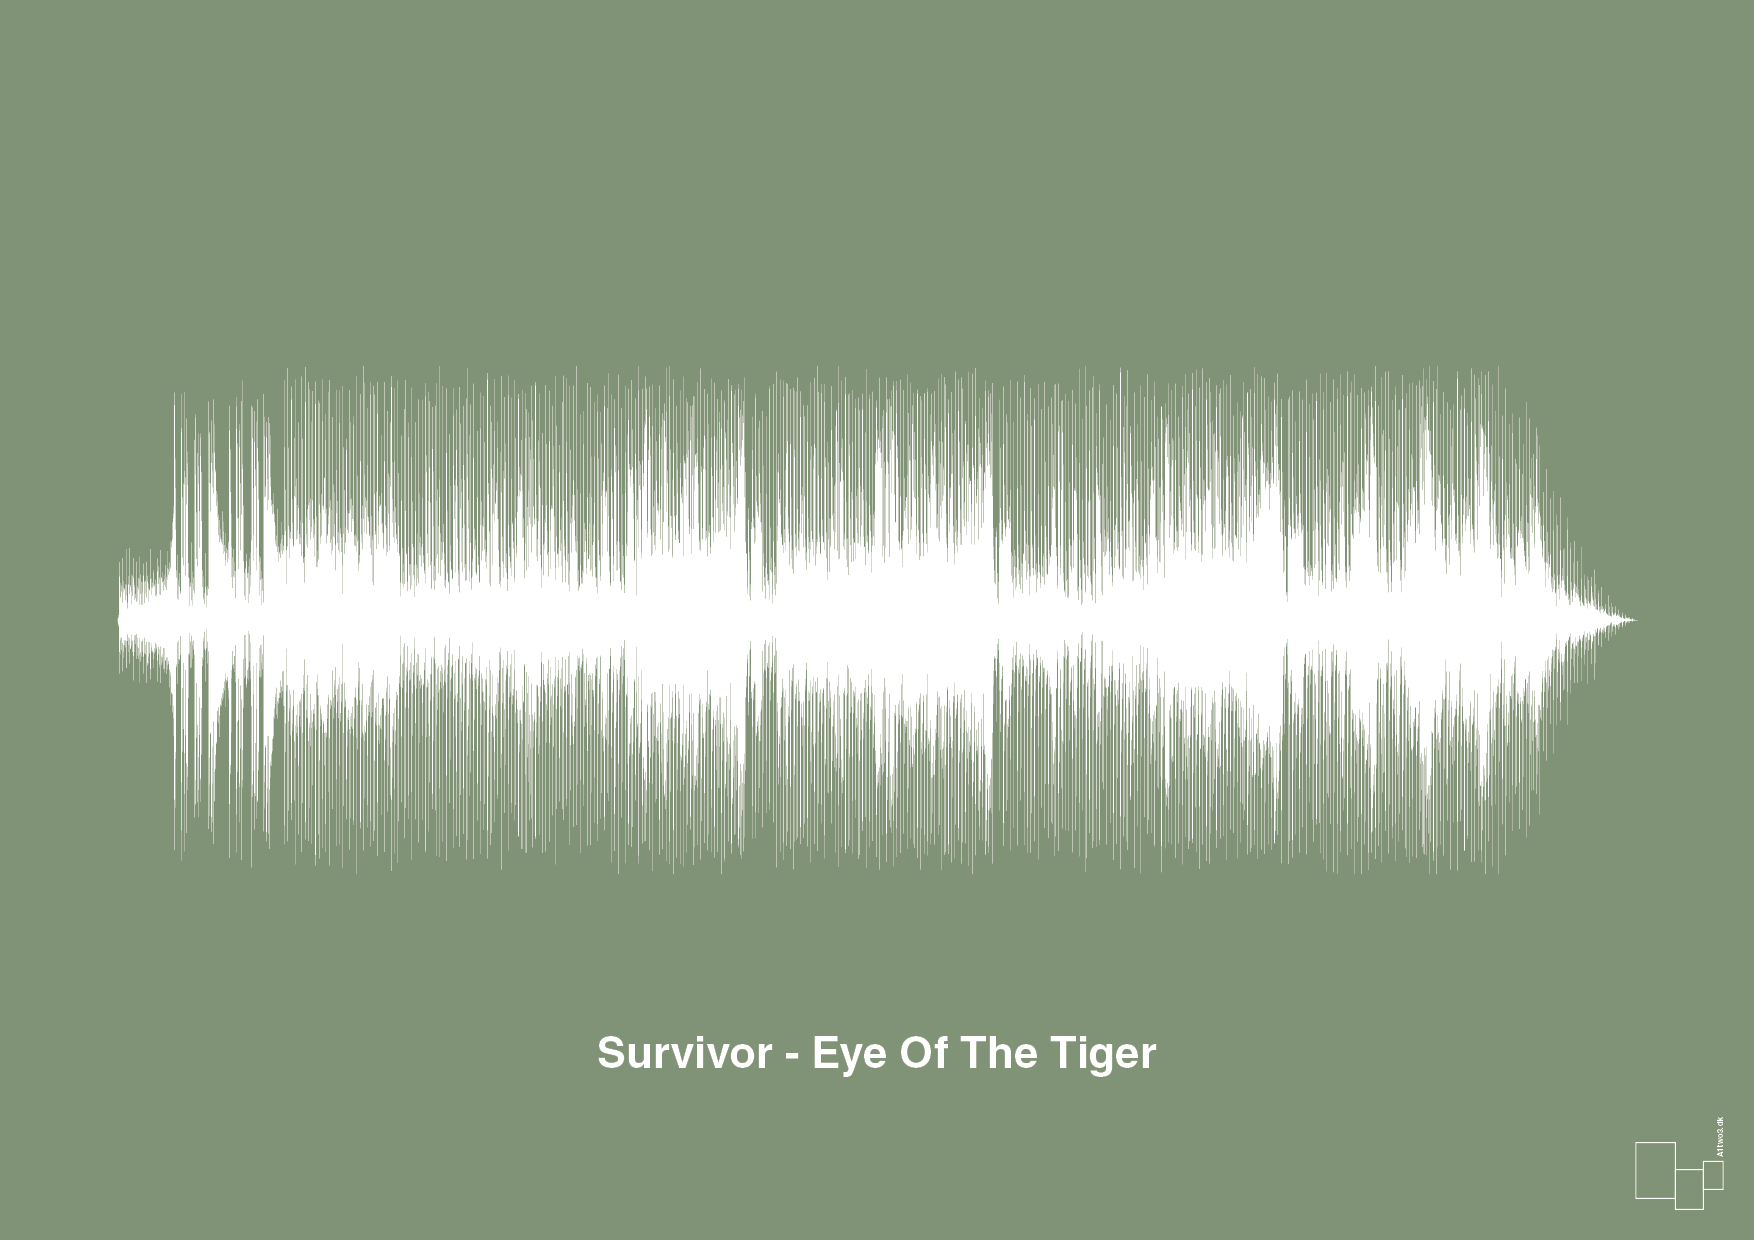 survivor - eye of the tiger - Plakat med Musik i Jade